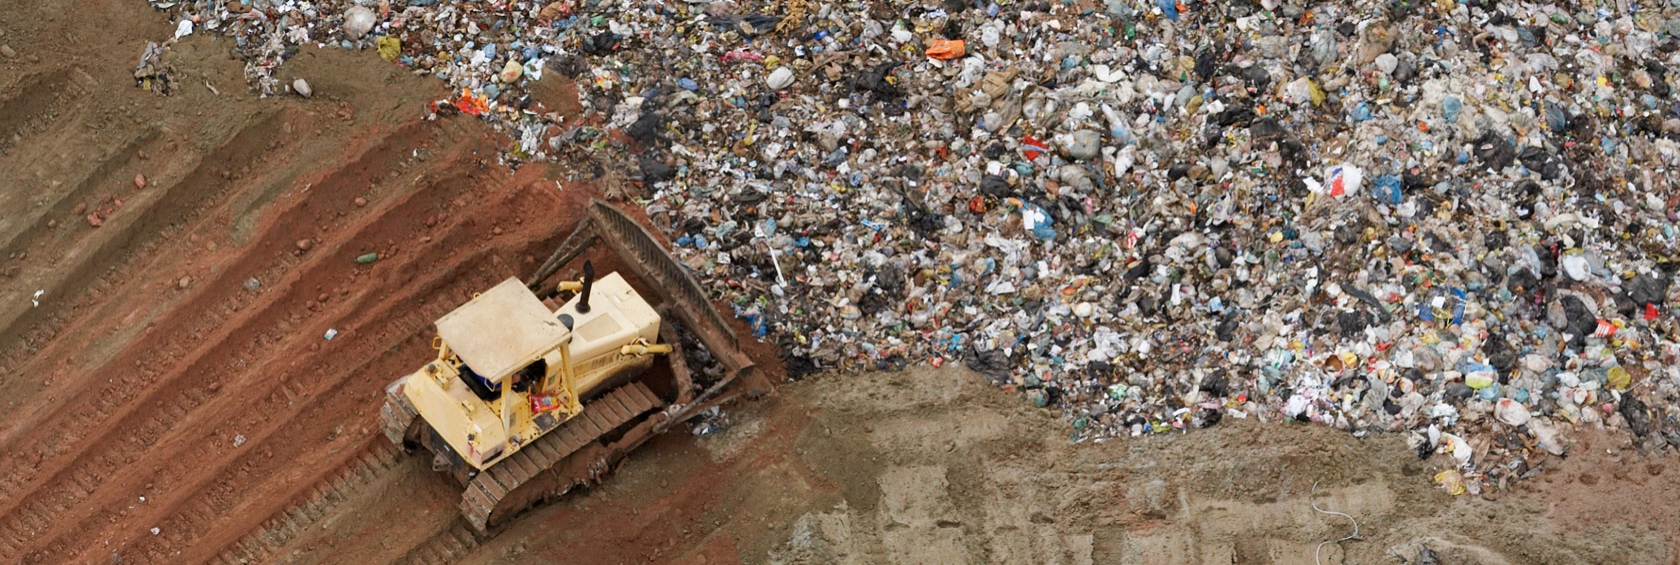 Bulldozer pushing garbage in landfill